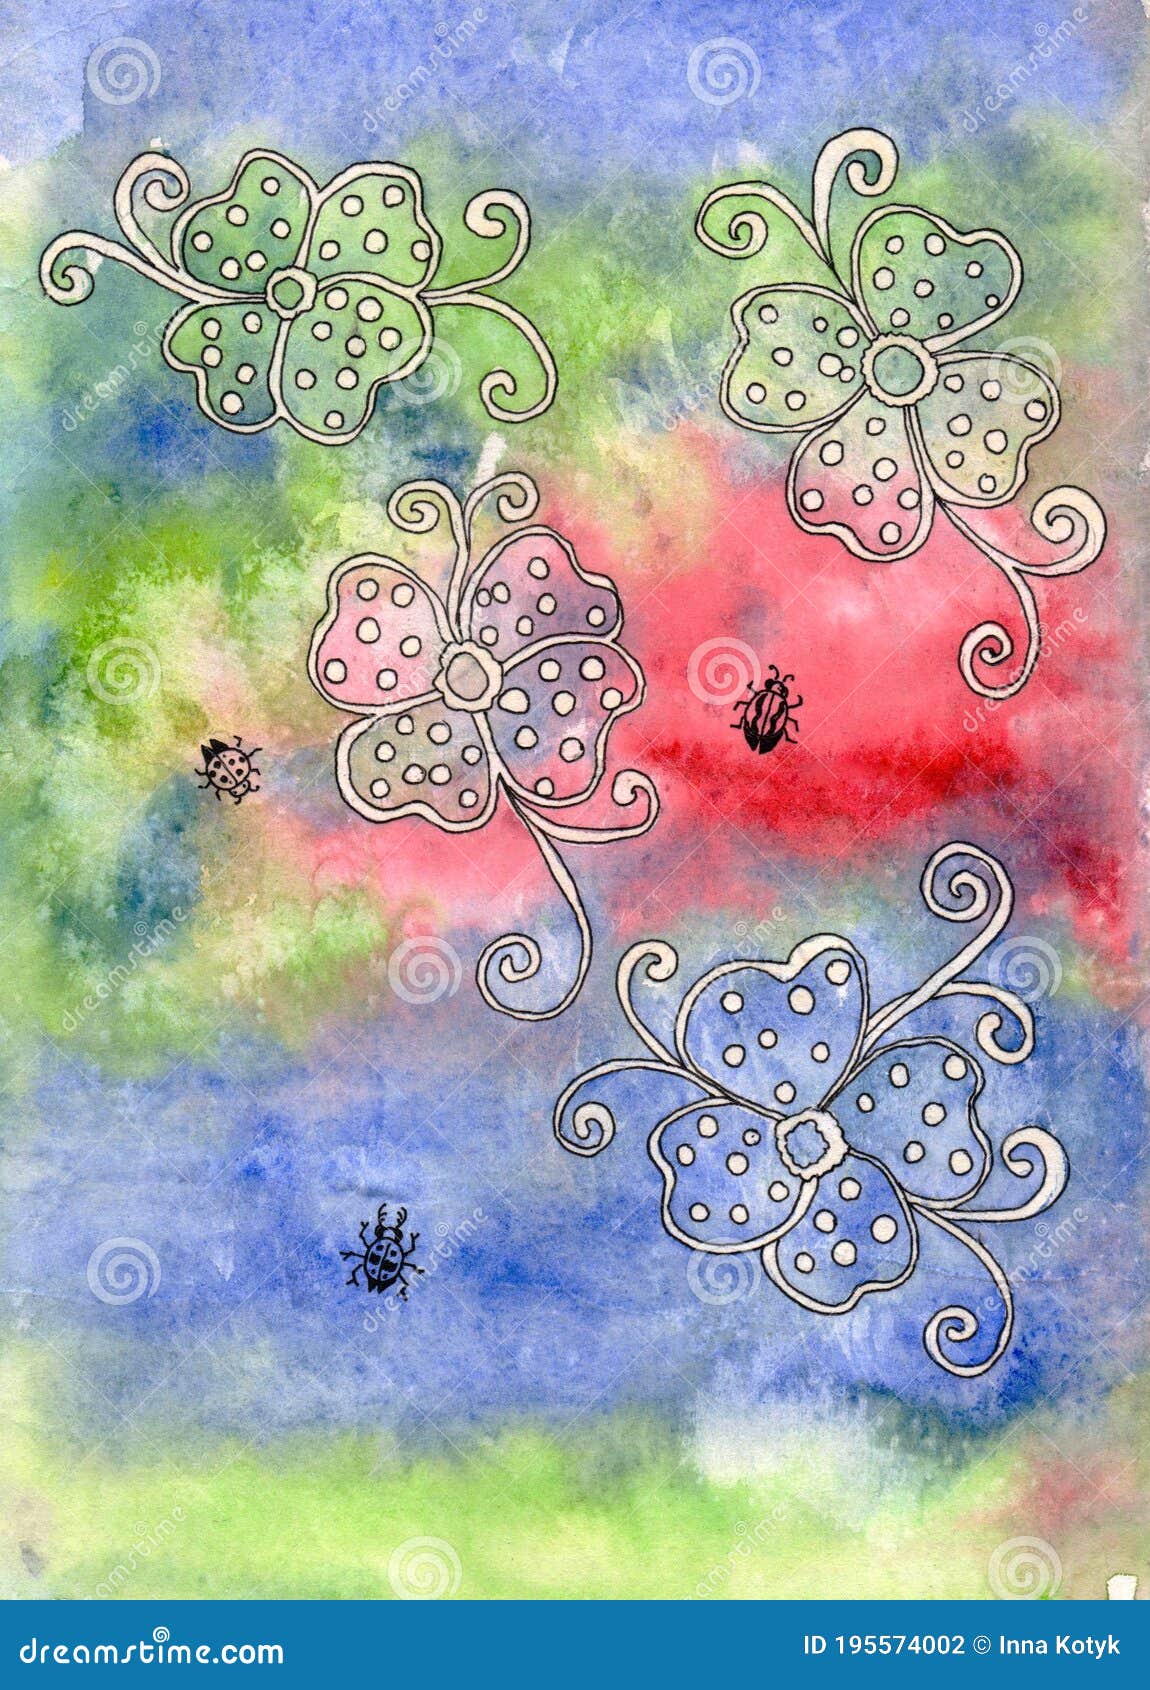 Flores Y Insectos En Un Fondo Acuarela. Dibujo Con Acuarelas Y Tinta. Stock  de ilustración - Ilustración de pintura, cubo: 195574002